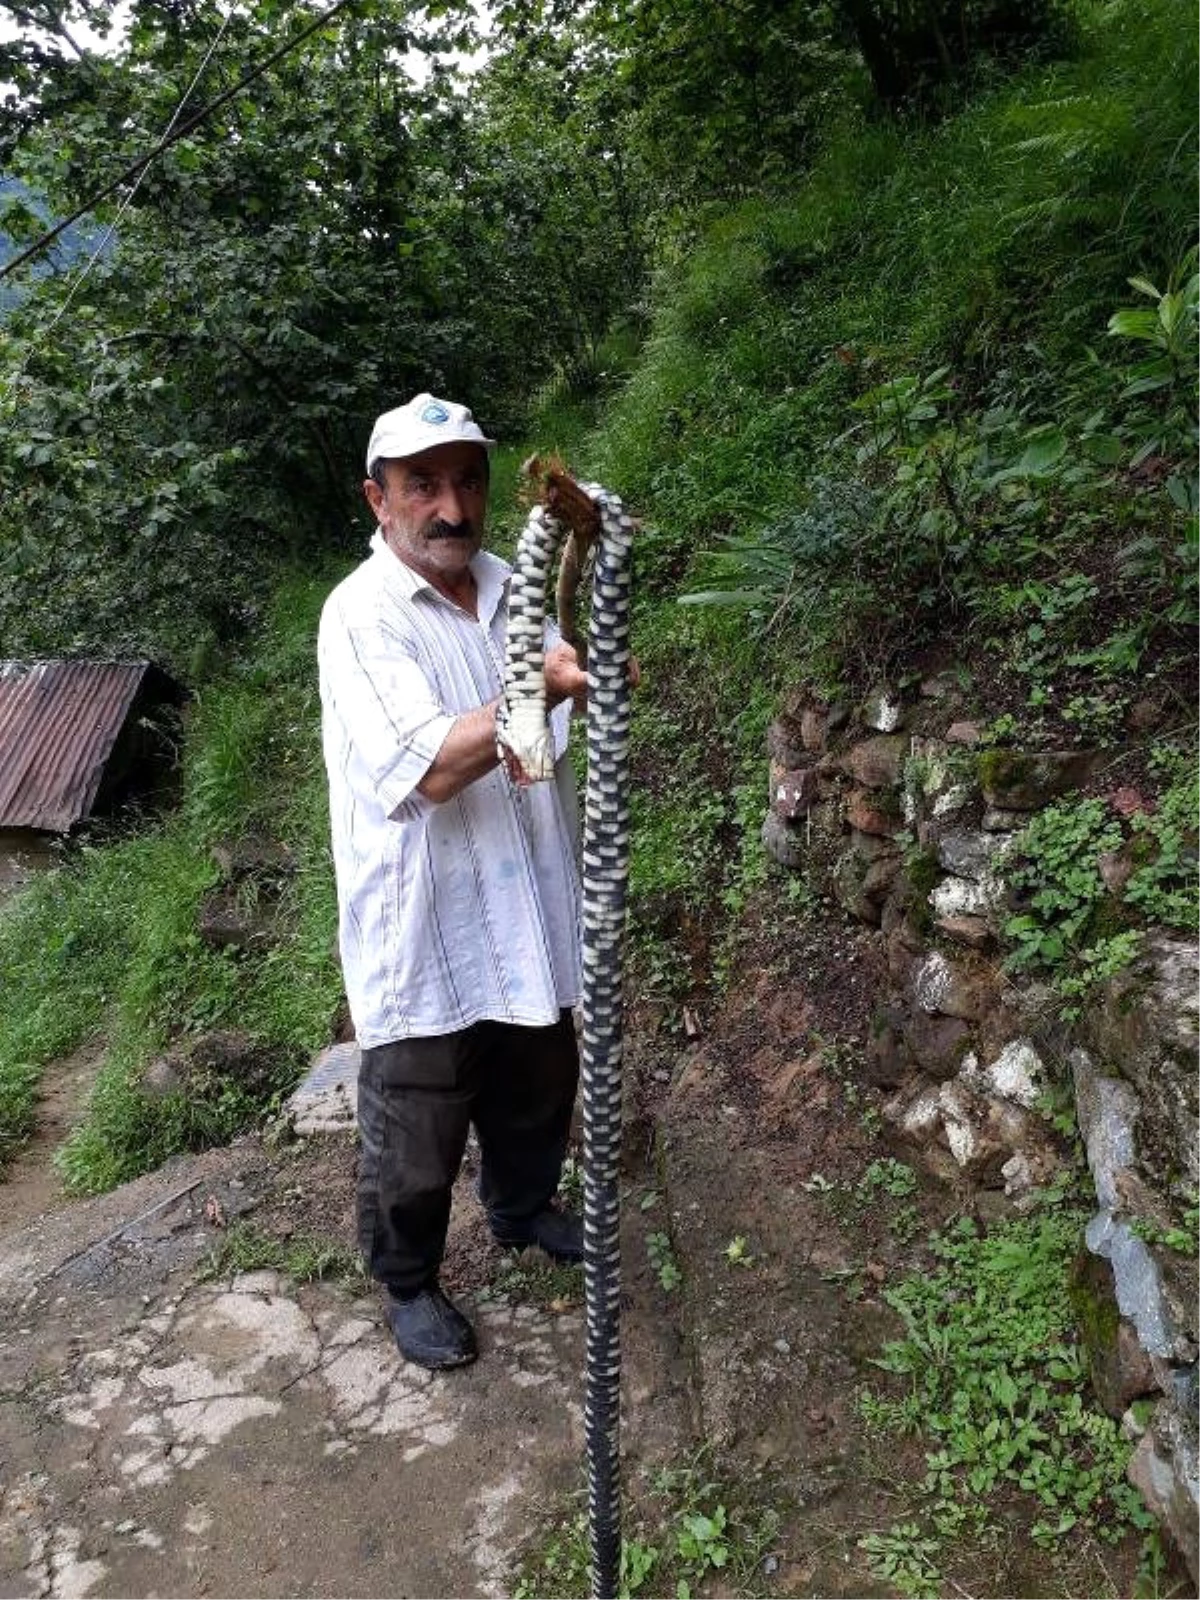 Dünyanın En Zehirli Yılanını Evinde Gören Trabzonlu, Sopayla Vurarak Öldürdü